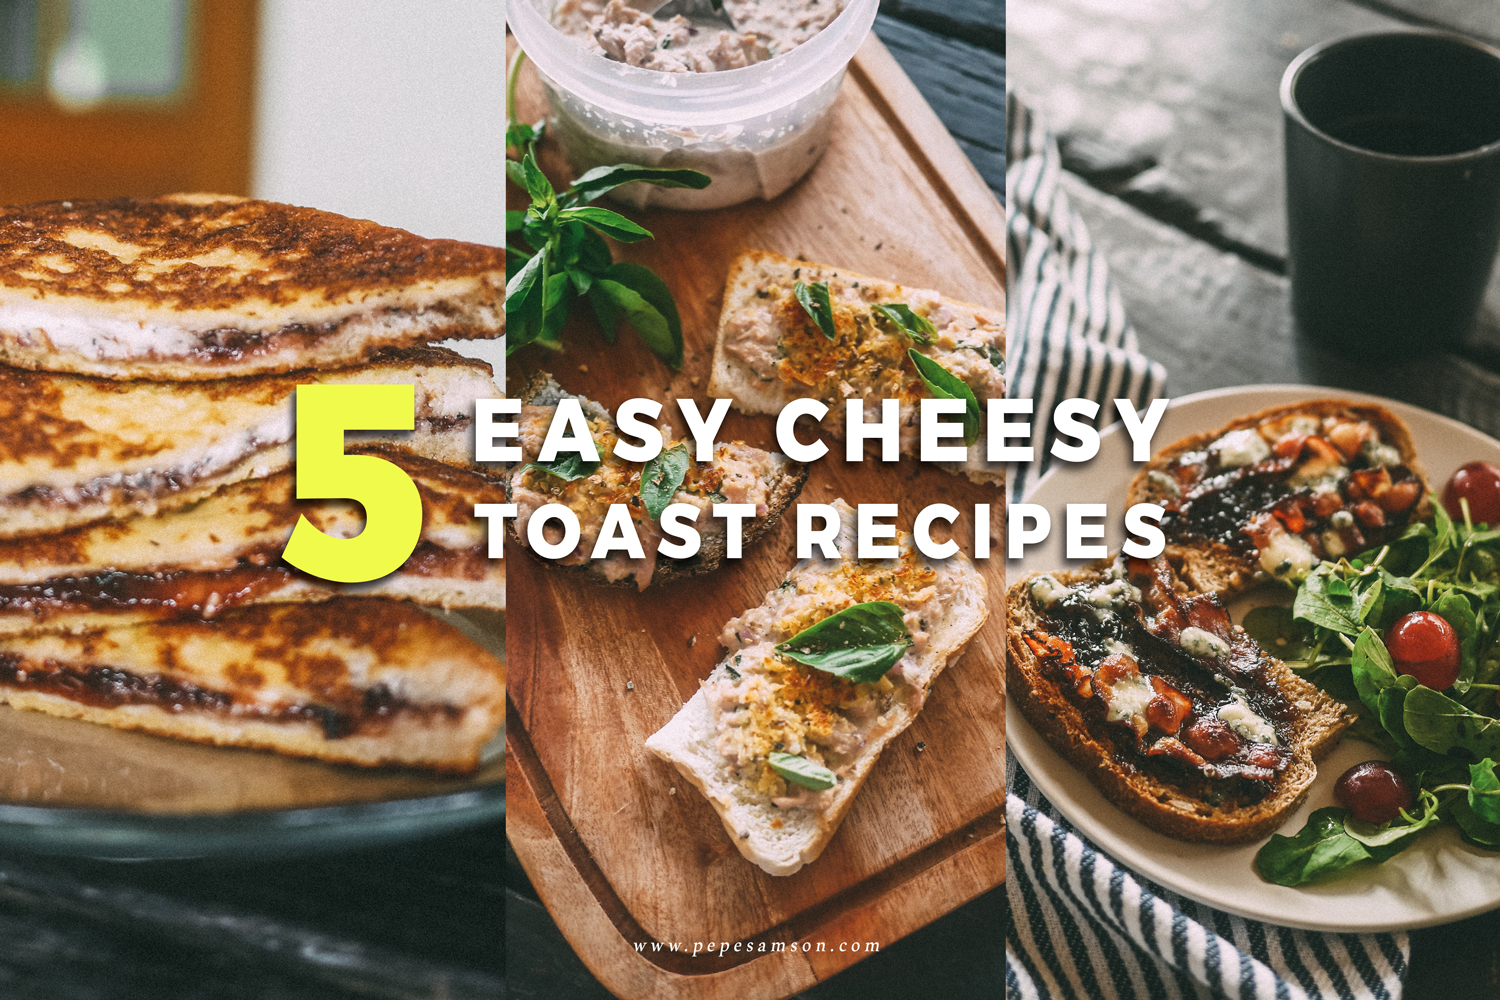 5 Easy Cheesy Toast Recipes